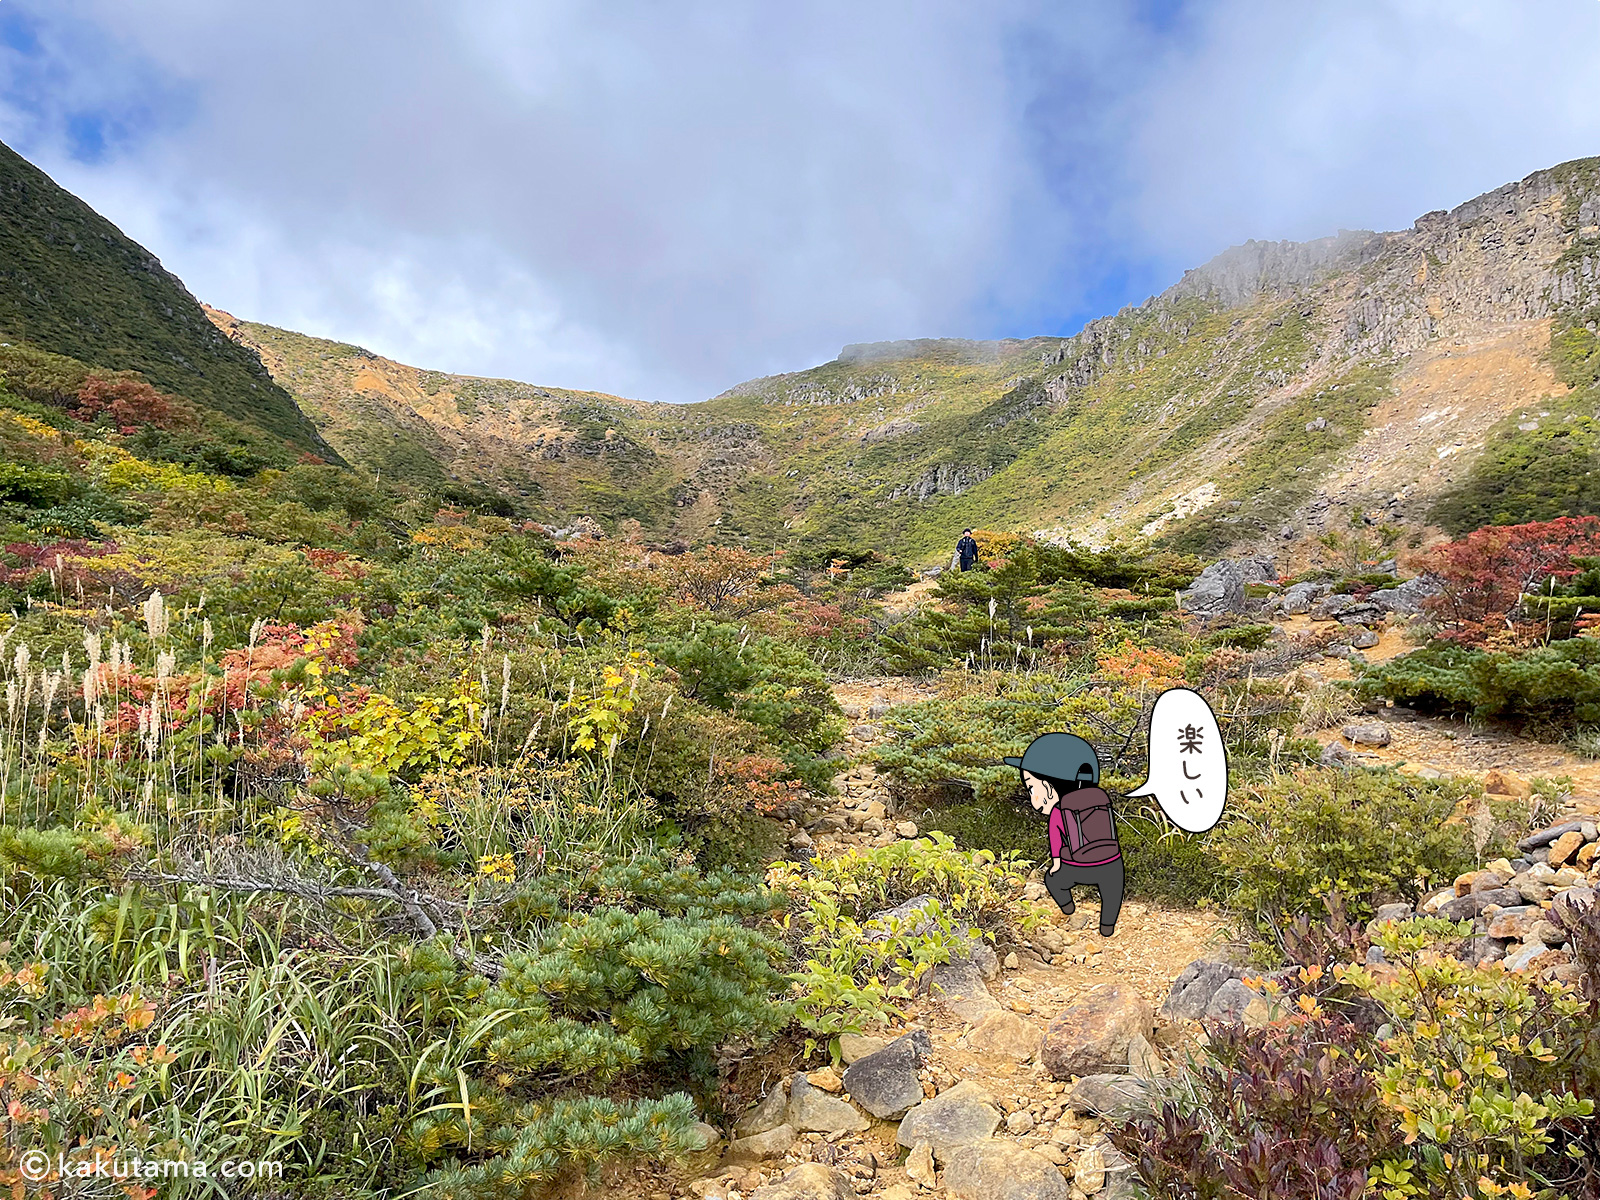 塩沢コースから安達太良山へ向かって登っていく登山者のイラストと写真